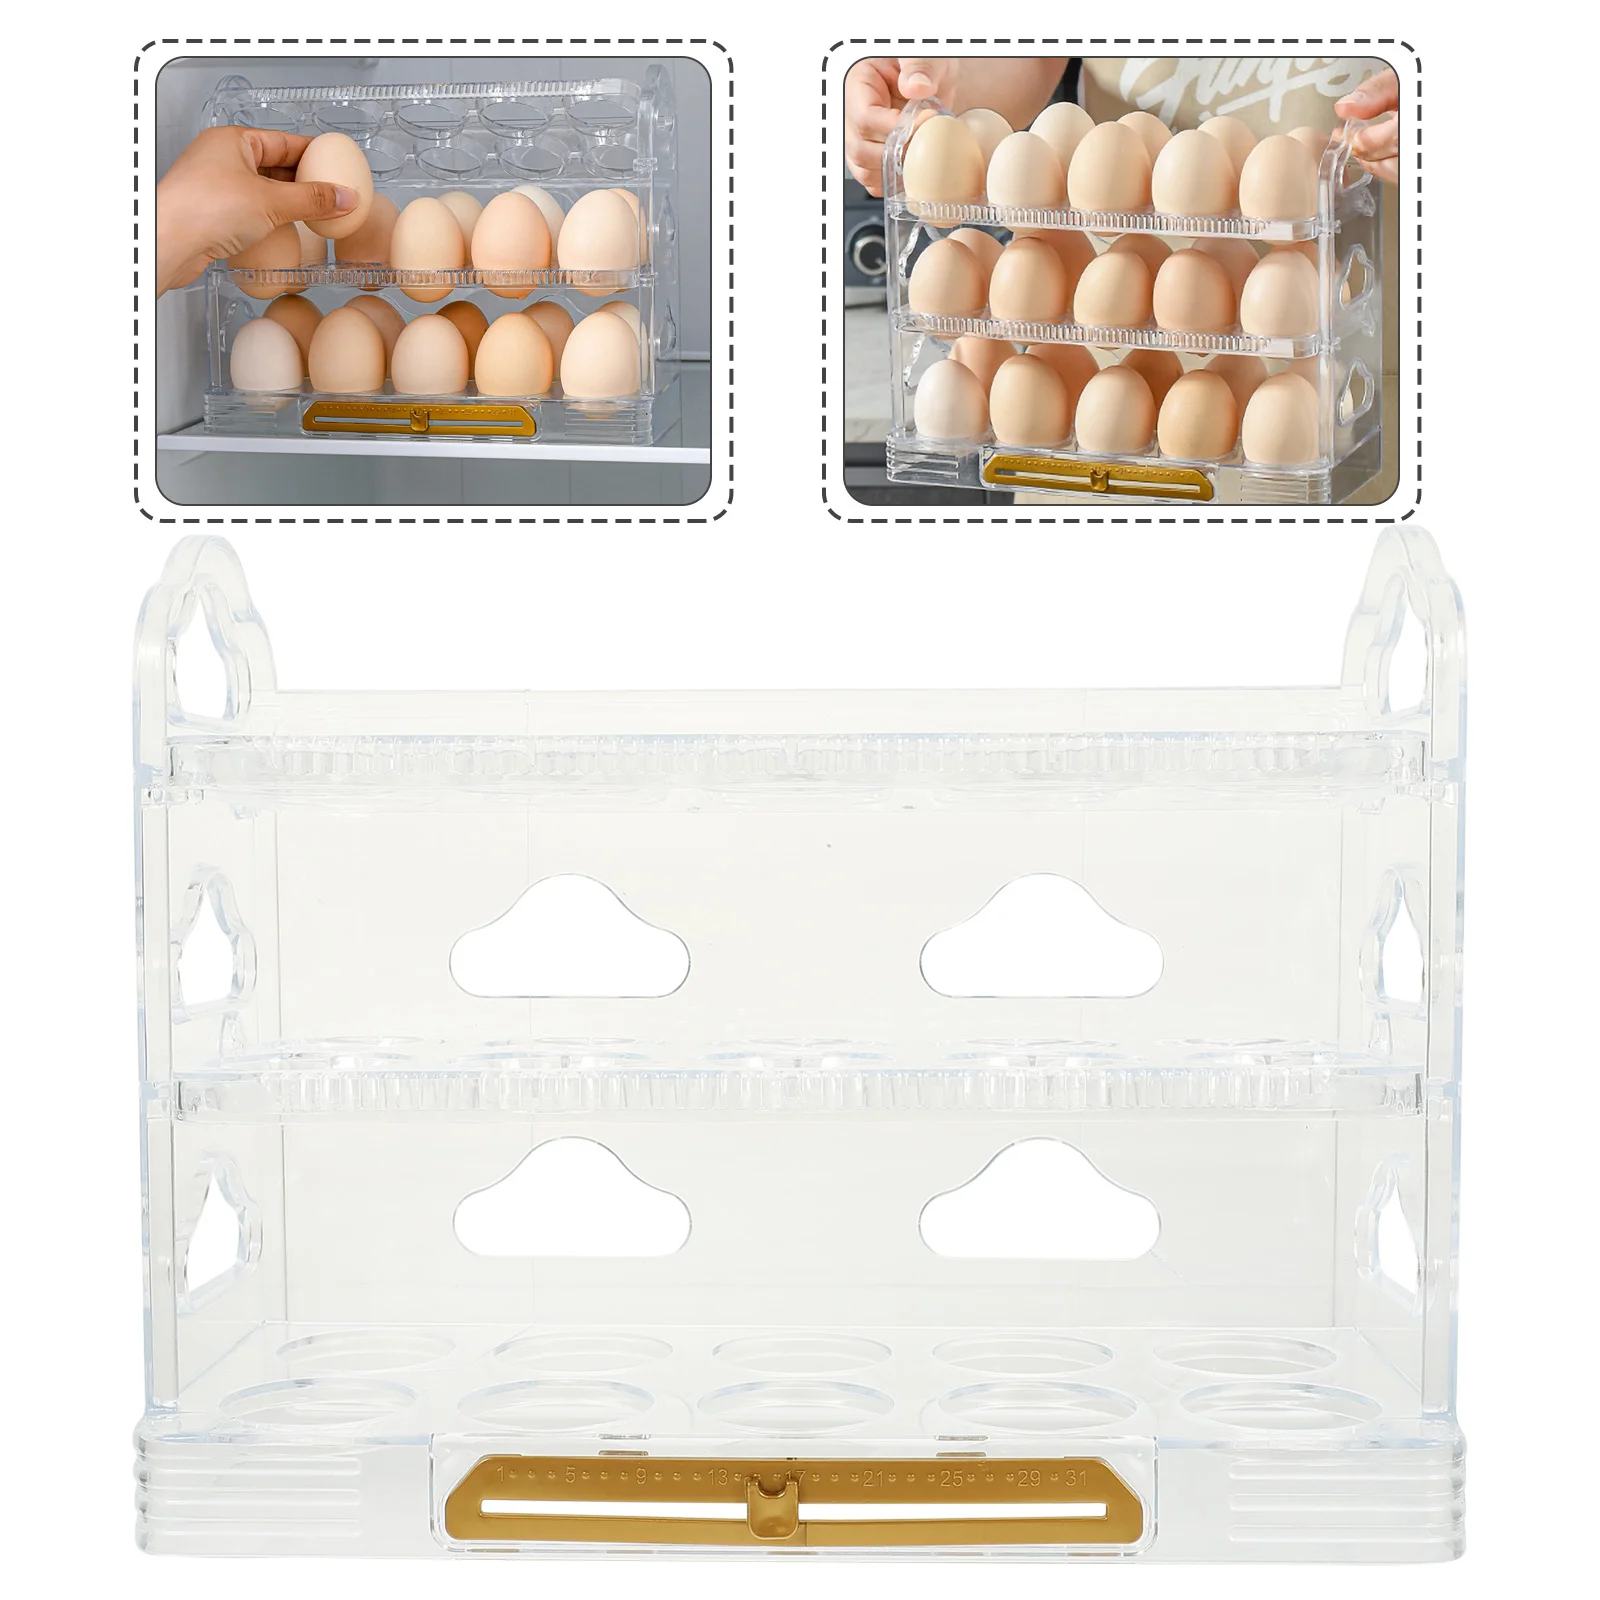 

Egg Holder Container Tray Fridge Organizer Storage Box Refrigerator Bins Chicken Layer Rack Kitchen Clear Bin Stackable Freezer